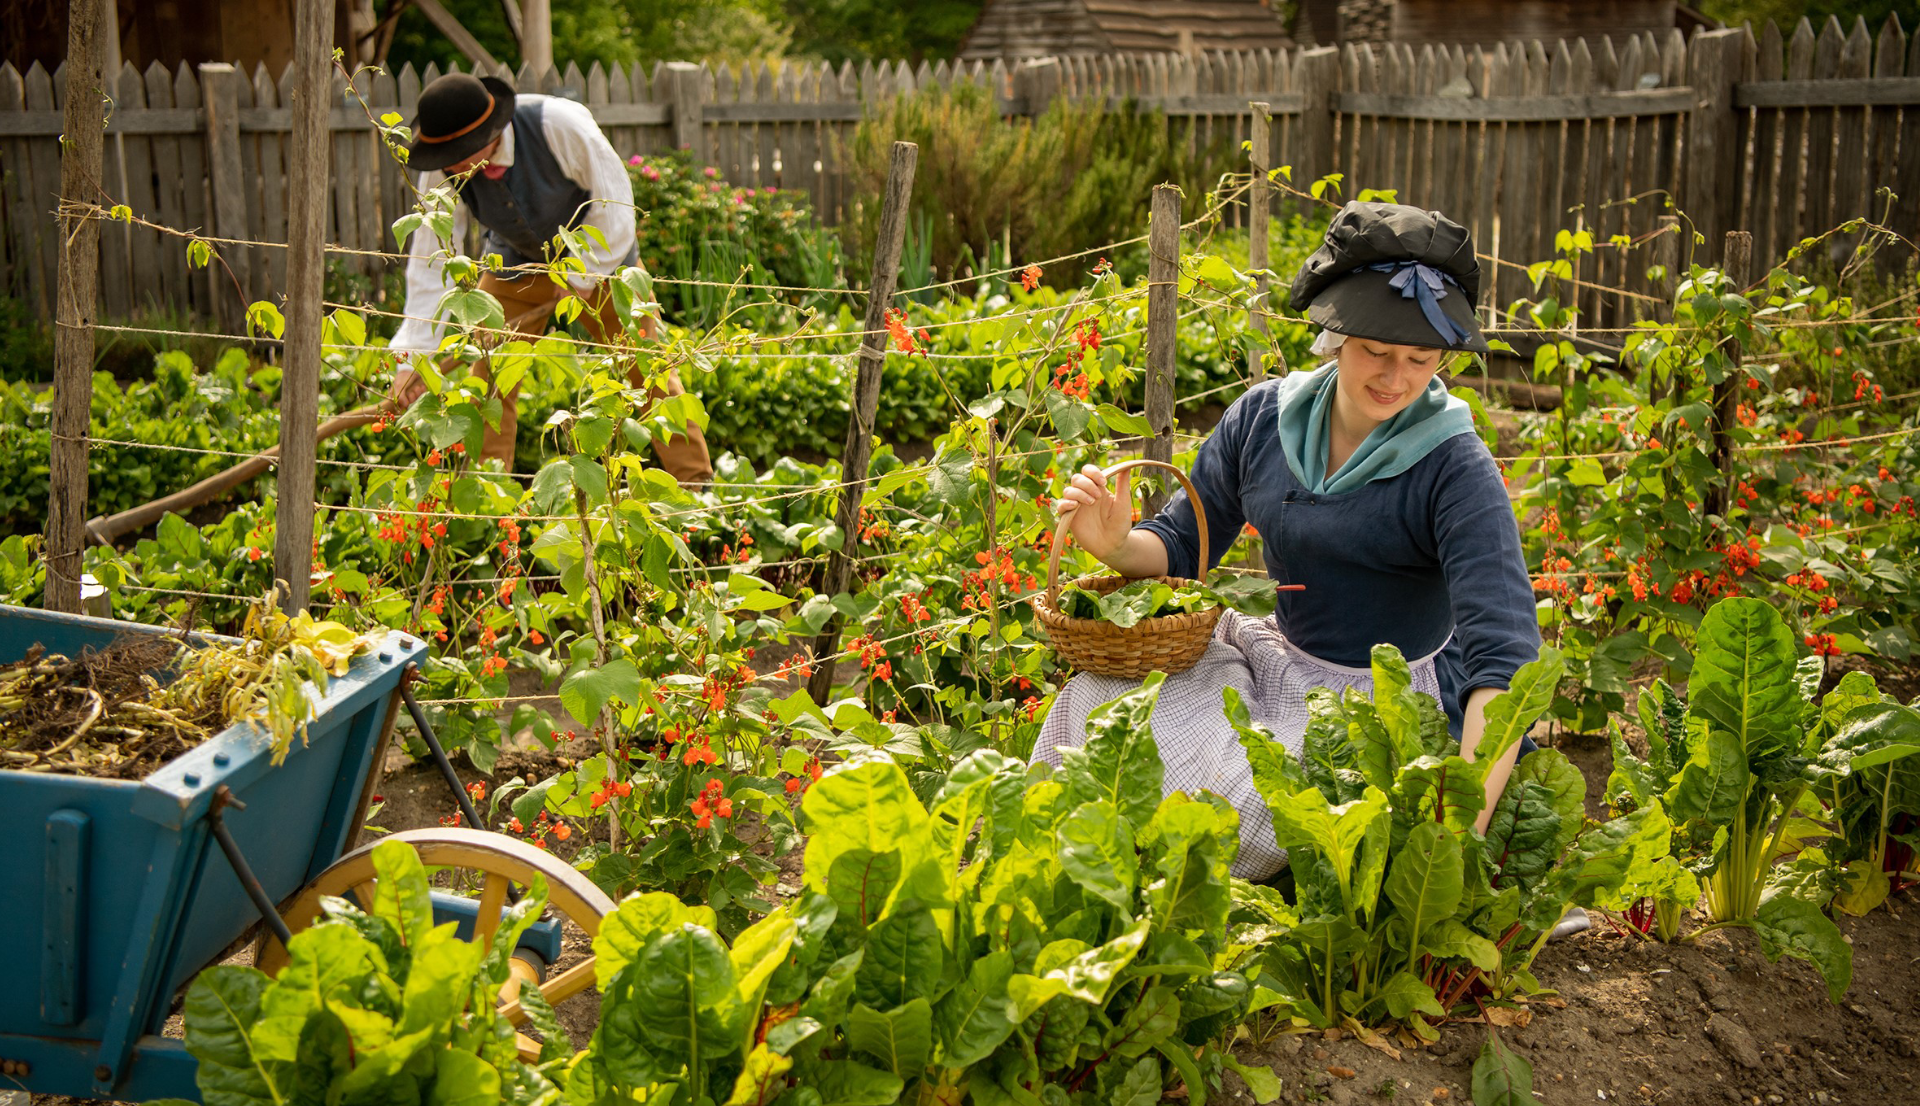 American Revolution Museum at Yorktown re-created Revolution-era farm kitchen garden